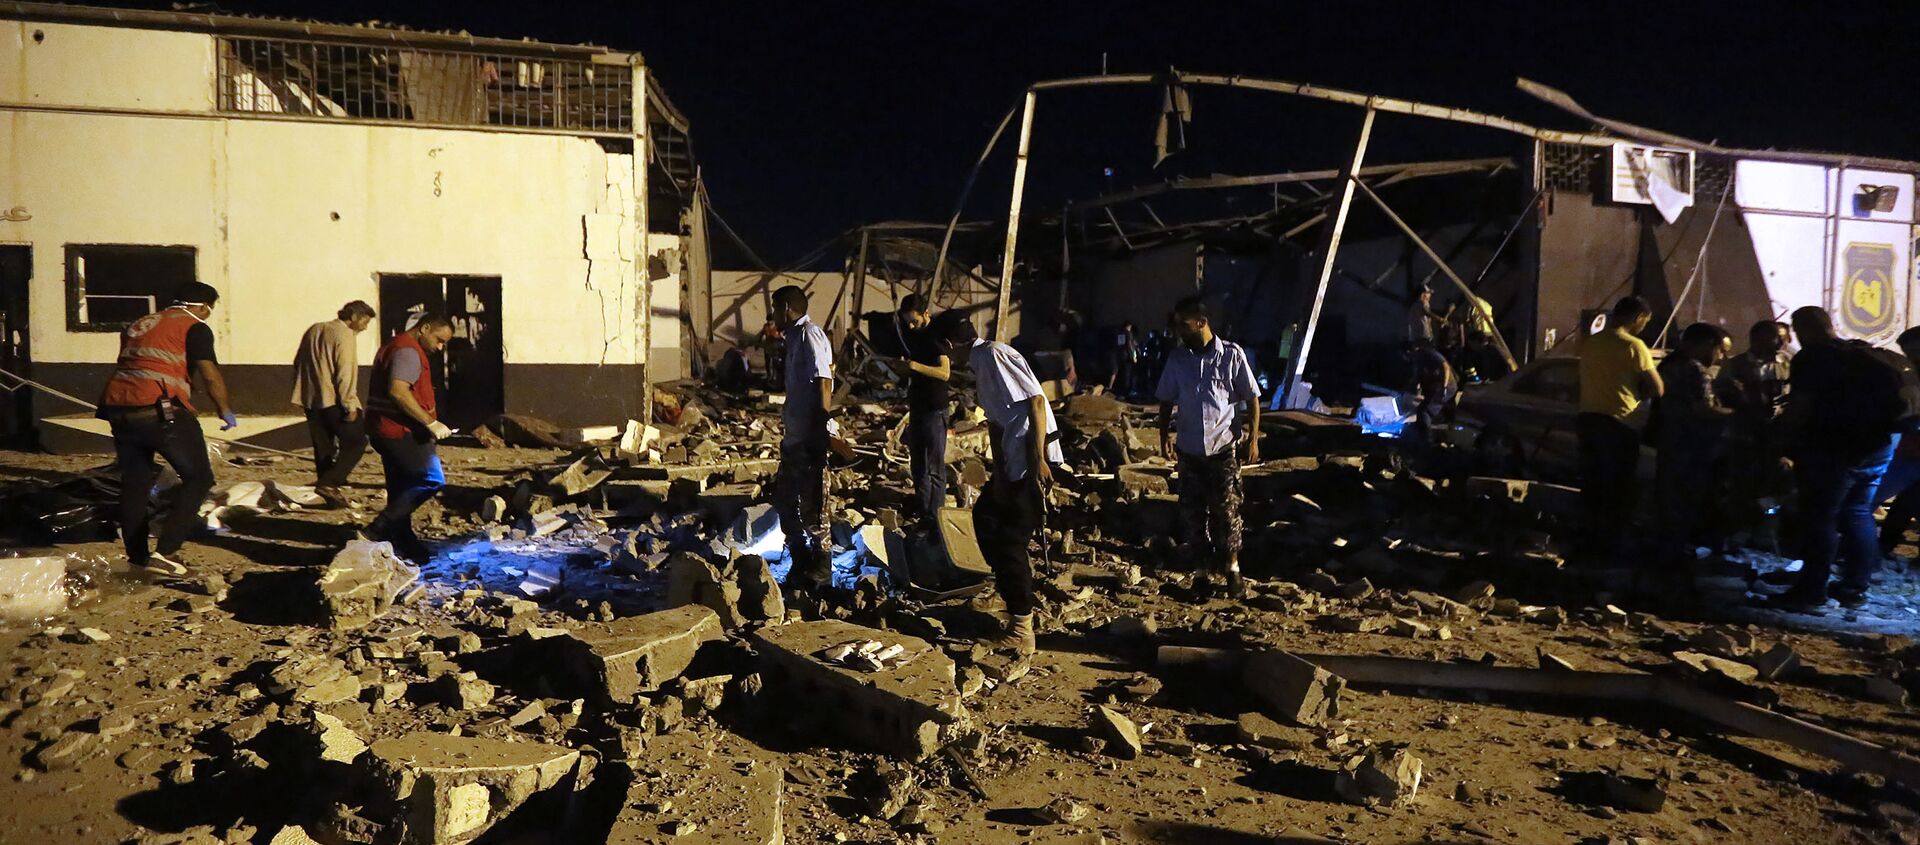 Libya’nın başkenti Trablus yakınlarında göçmenlerin tutulduğu bir merkeze düzenlenen hava saldırısında en az 40 kişi hayatını kaybederken, 80 kişi yaralandı. - Sputnik Türkiye, 1920, 05.07.2019